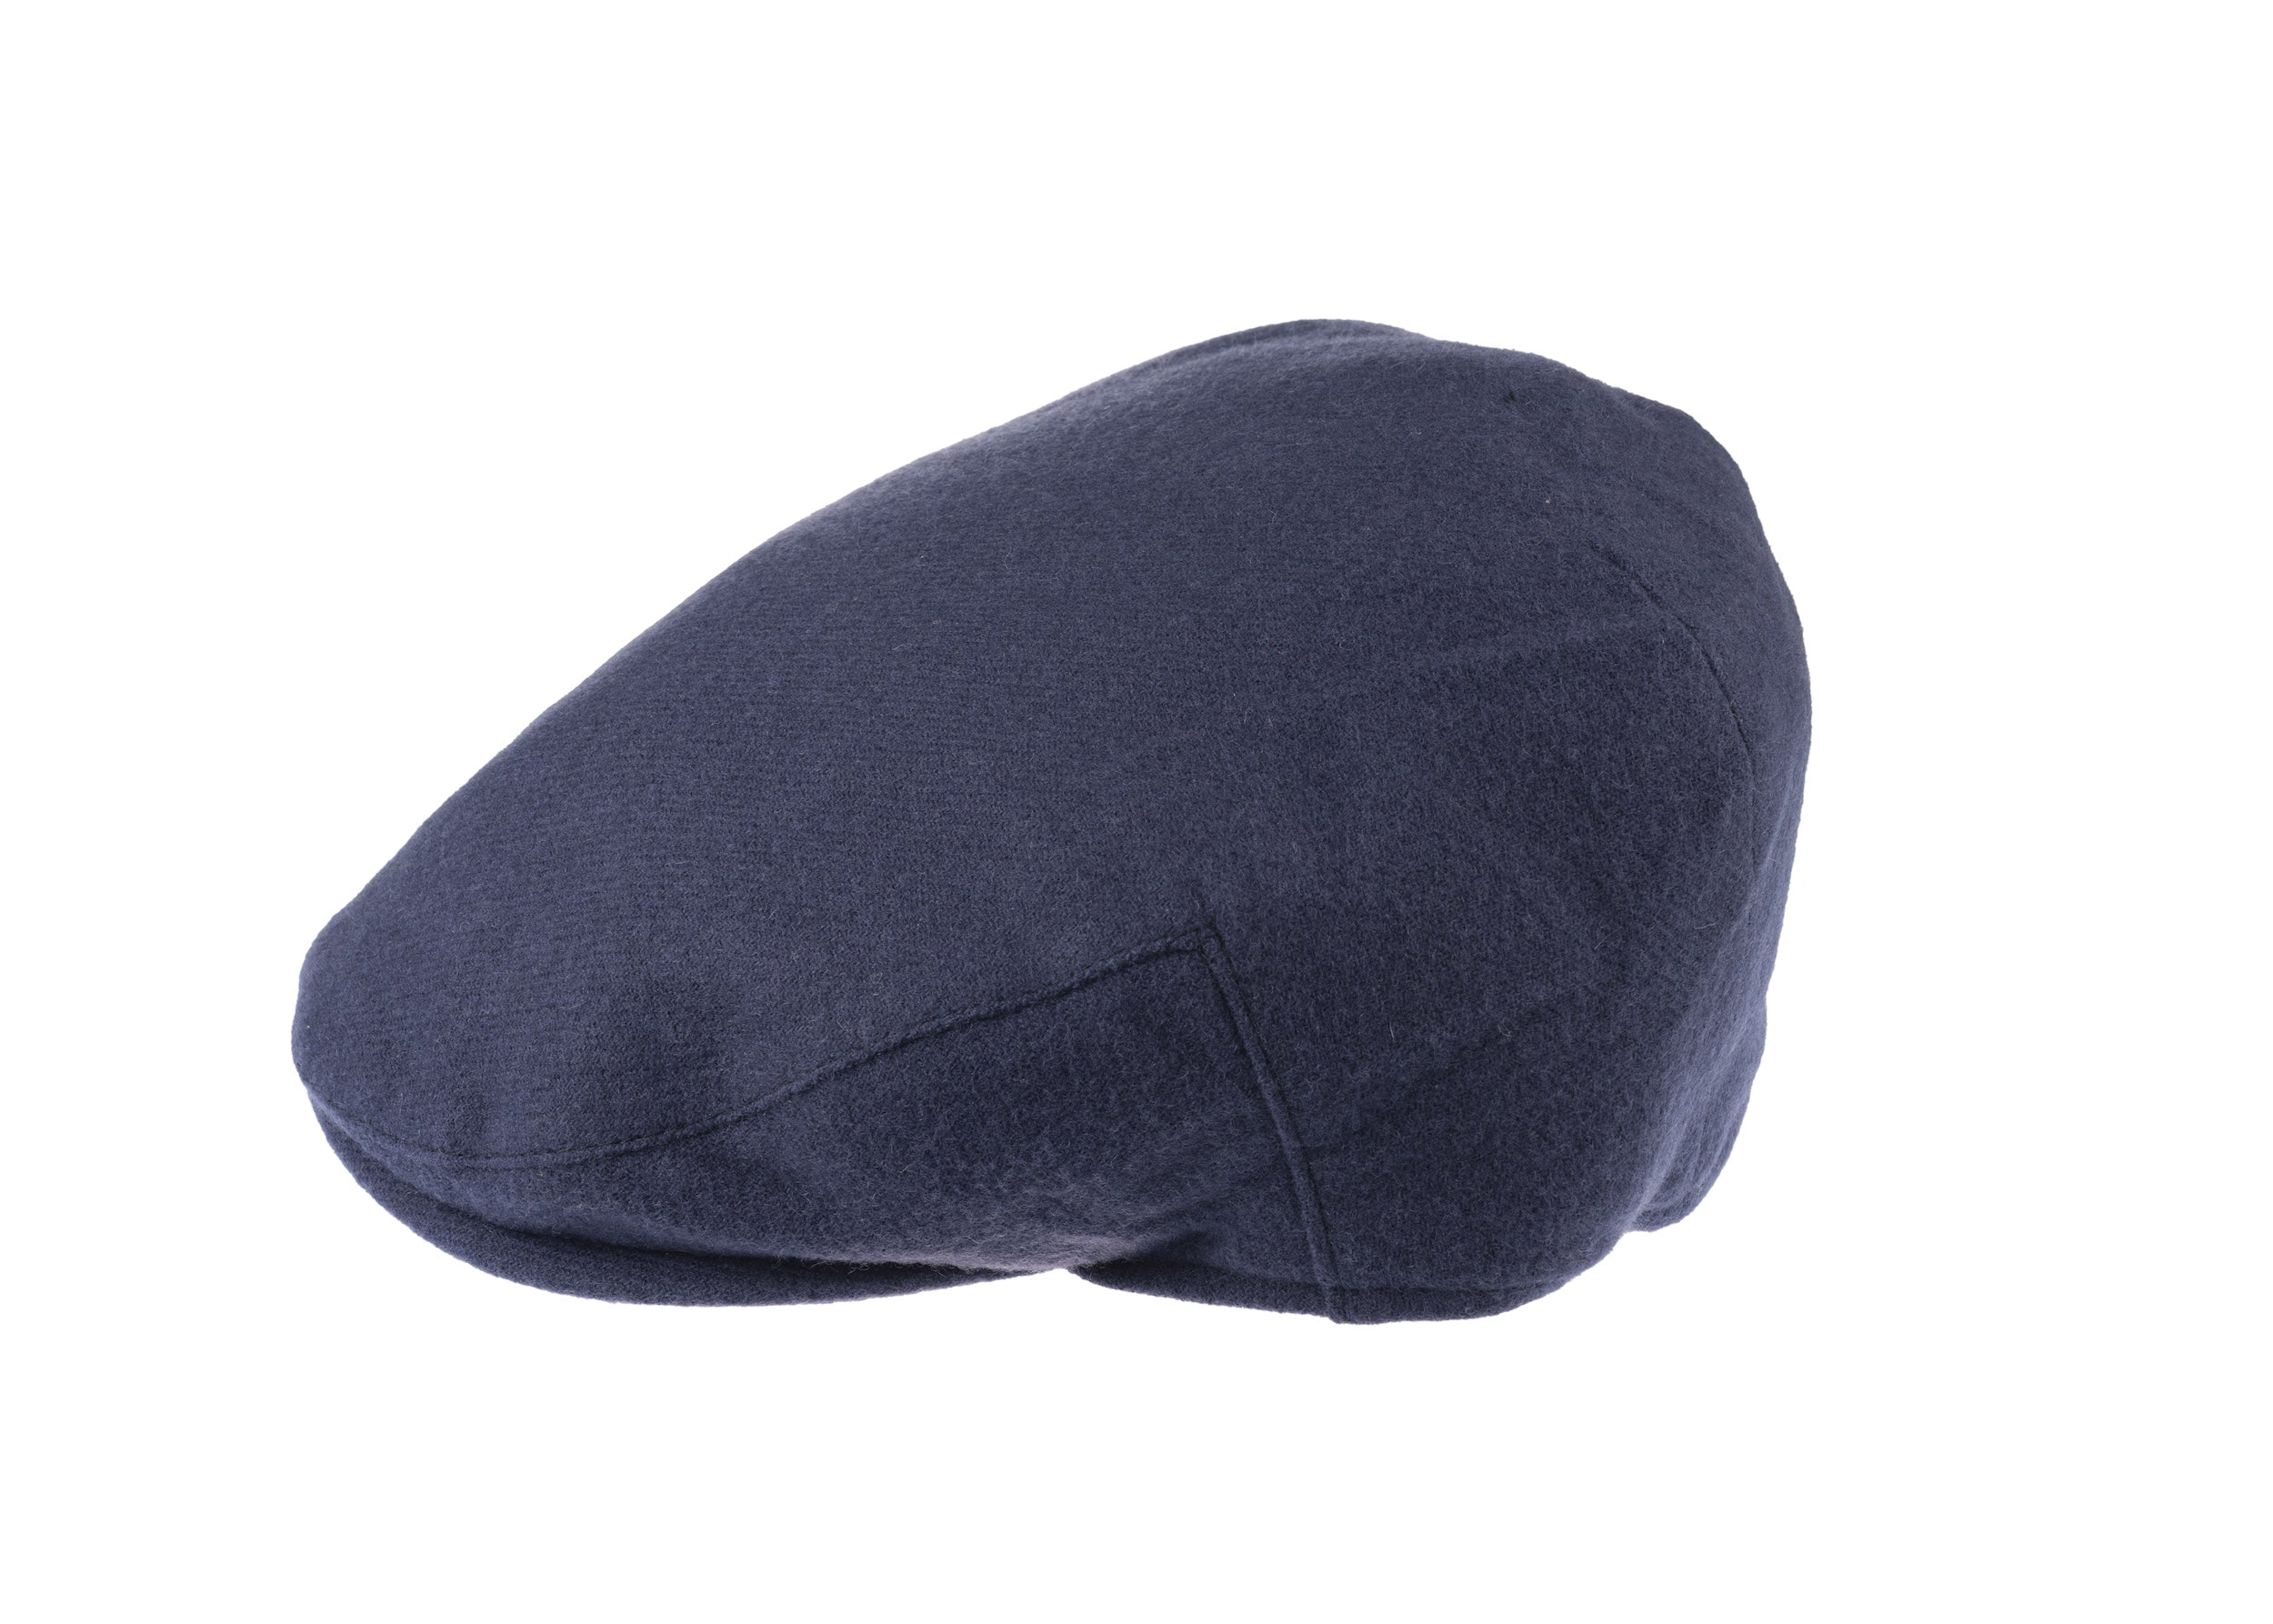 Josh balmoral flat cap in cashmere/wool blend fabric in Blue